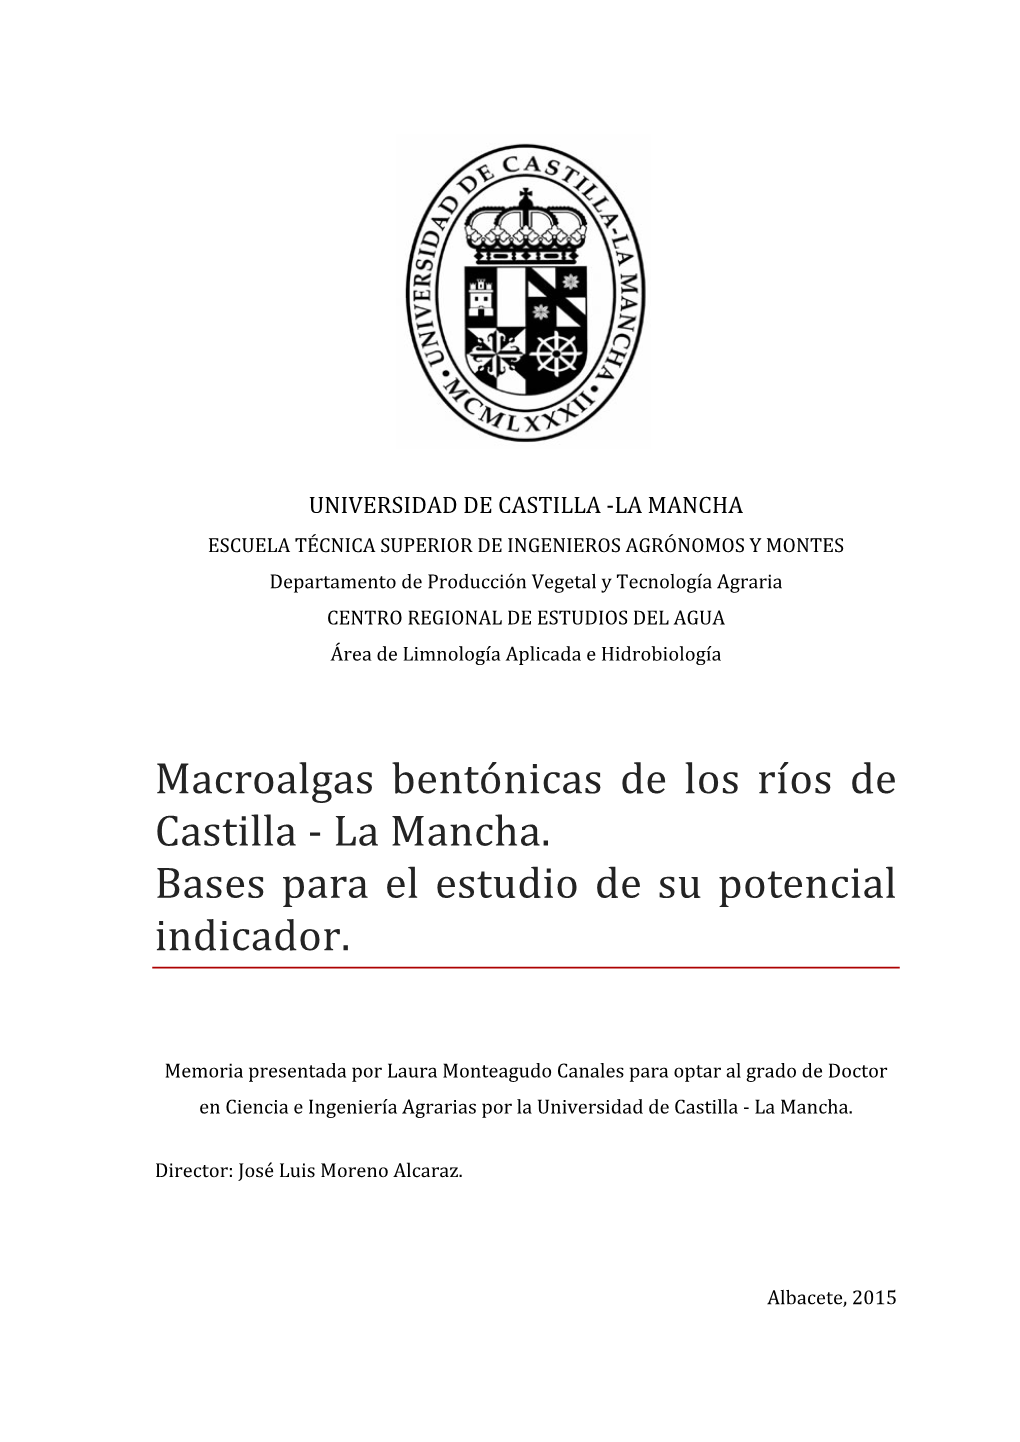 Macroalgas Bentónicas De Los Rı́os De Castilla